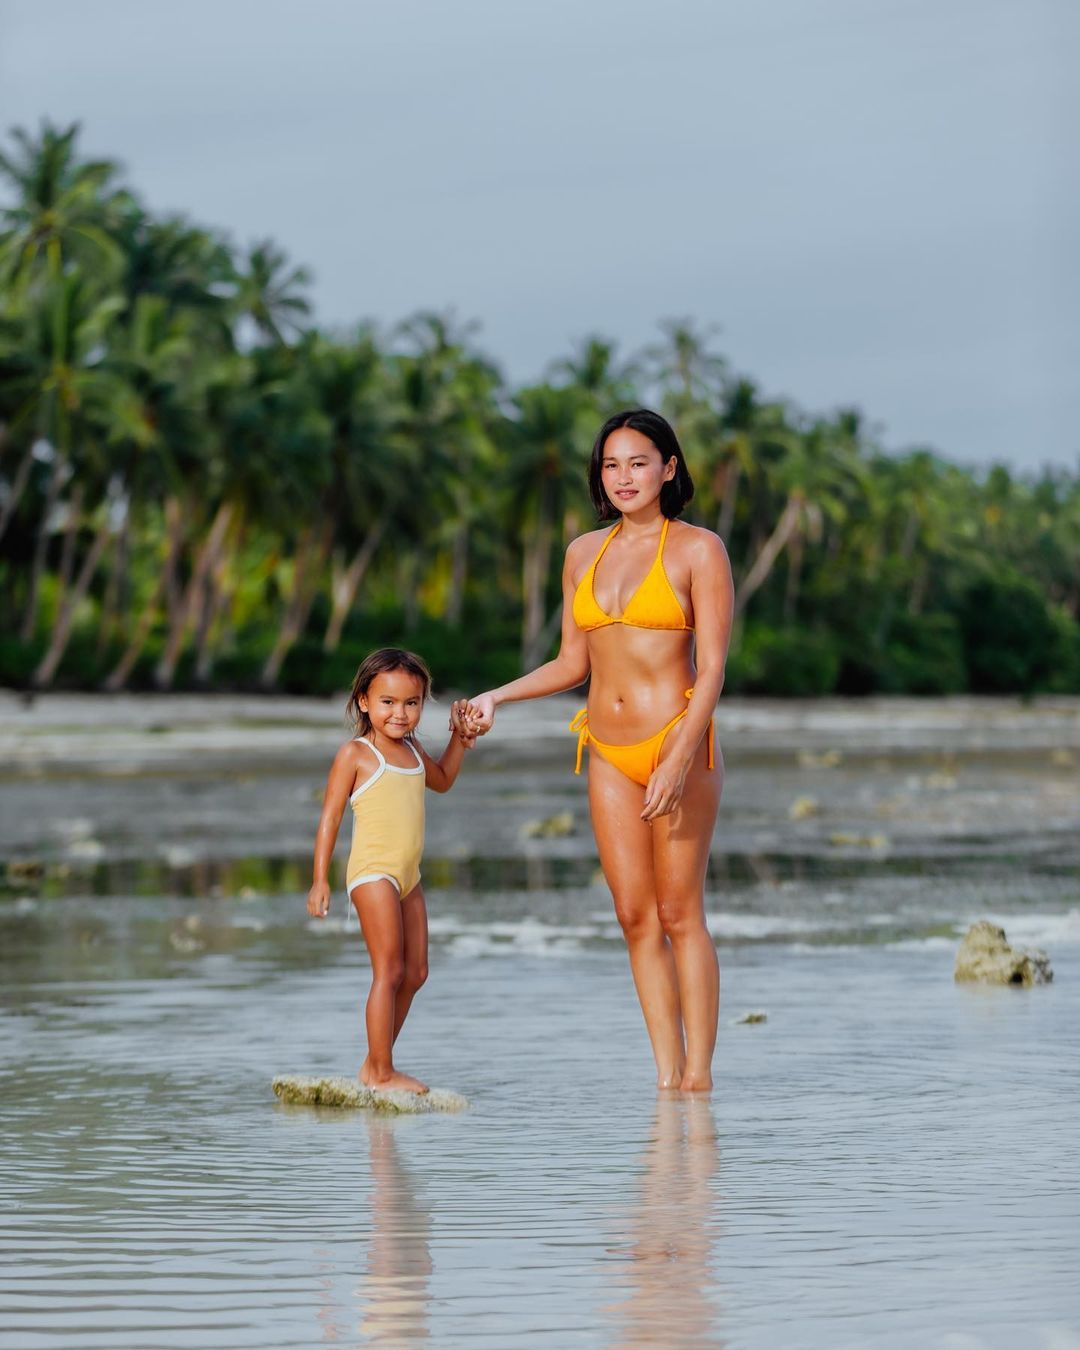 danika nemis twinning beach ootds and her daughter